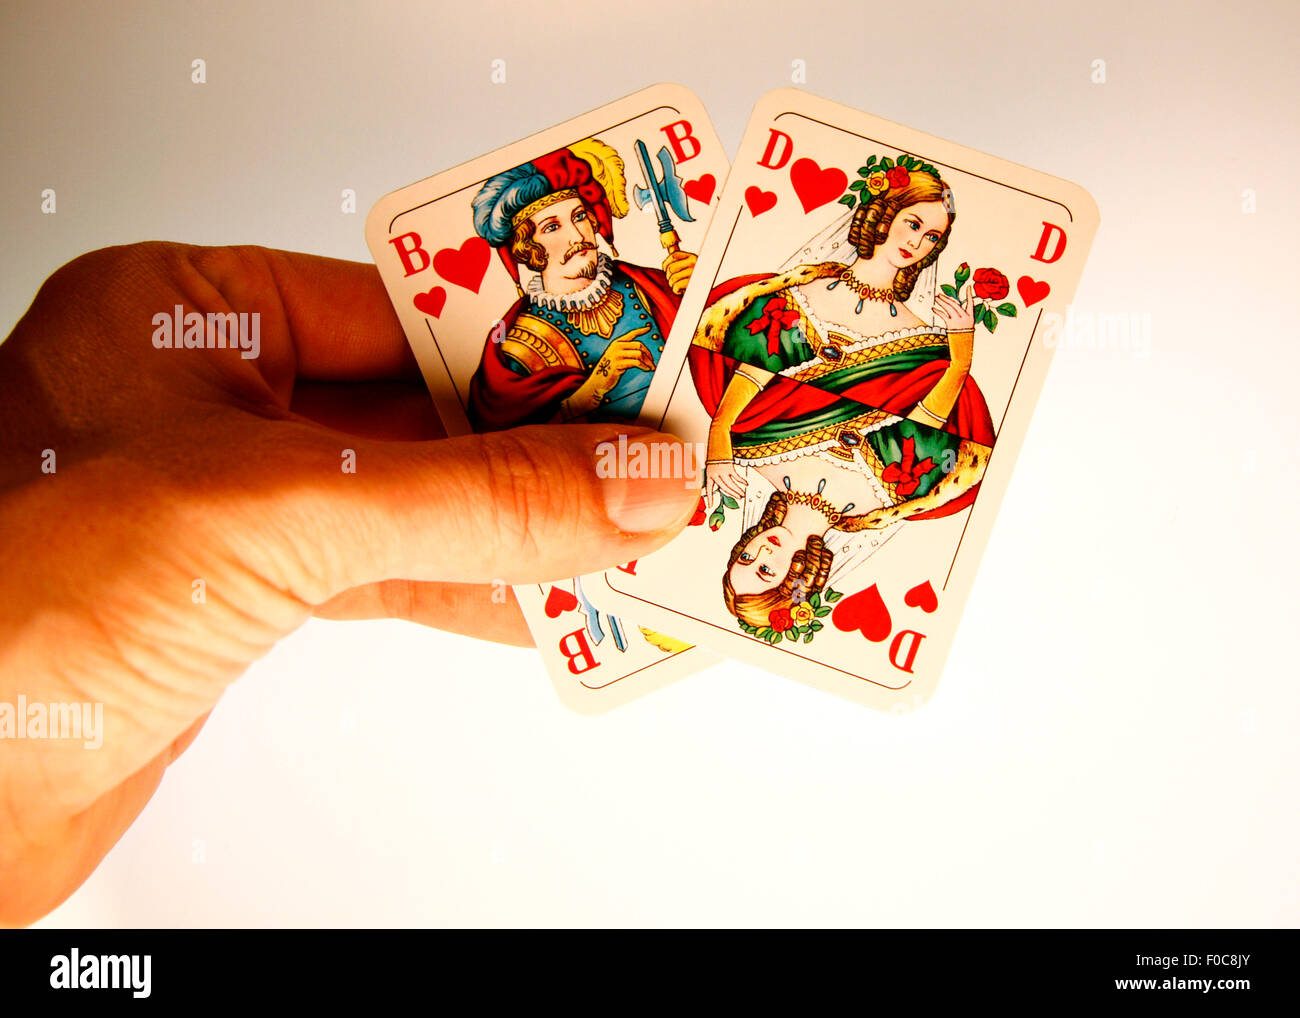 Herz Bube und Herz Dame - Symbolbild Kartenspiel/ scheda di gioco. Foto Stock